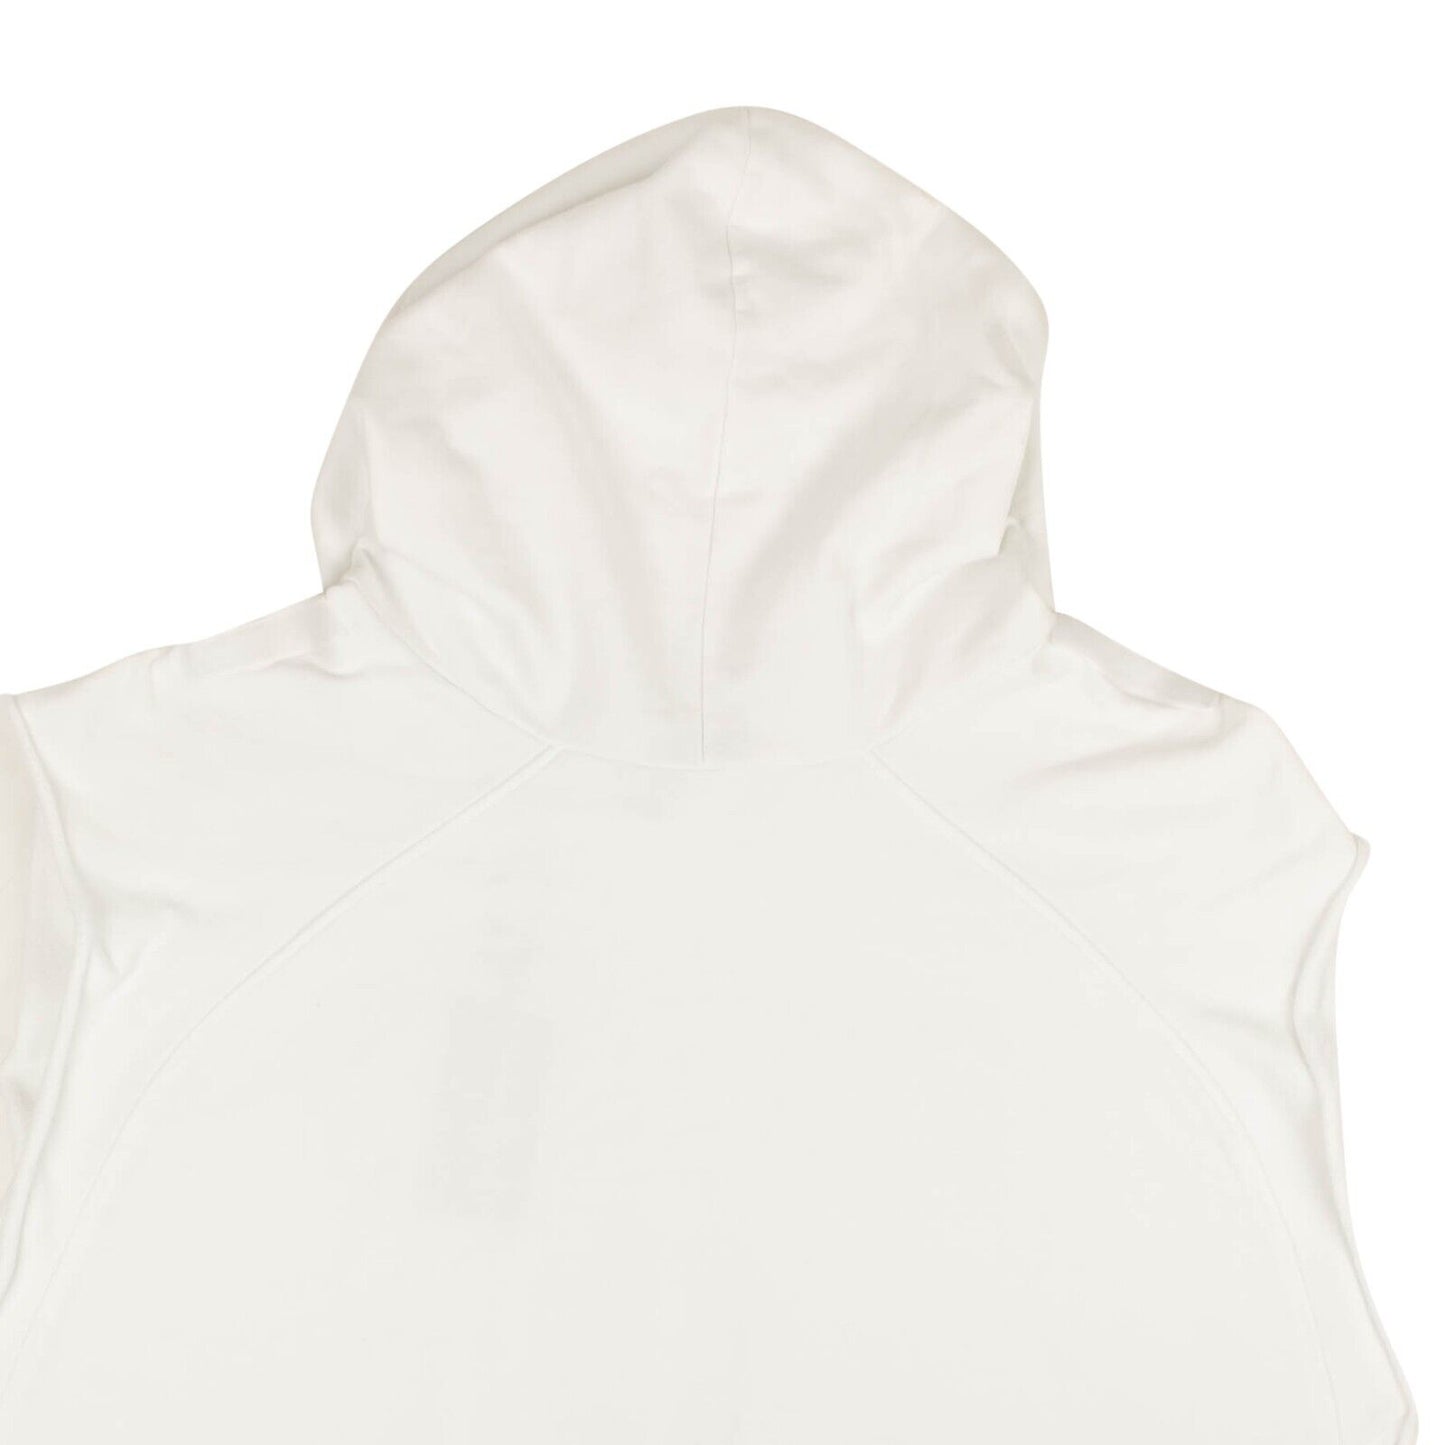 Raf Simons Oversized Sleeveless Hoodie Sweatshirt - White